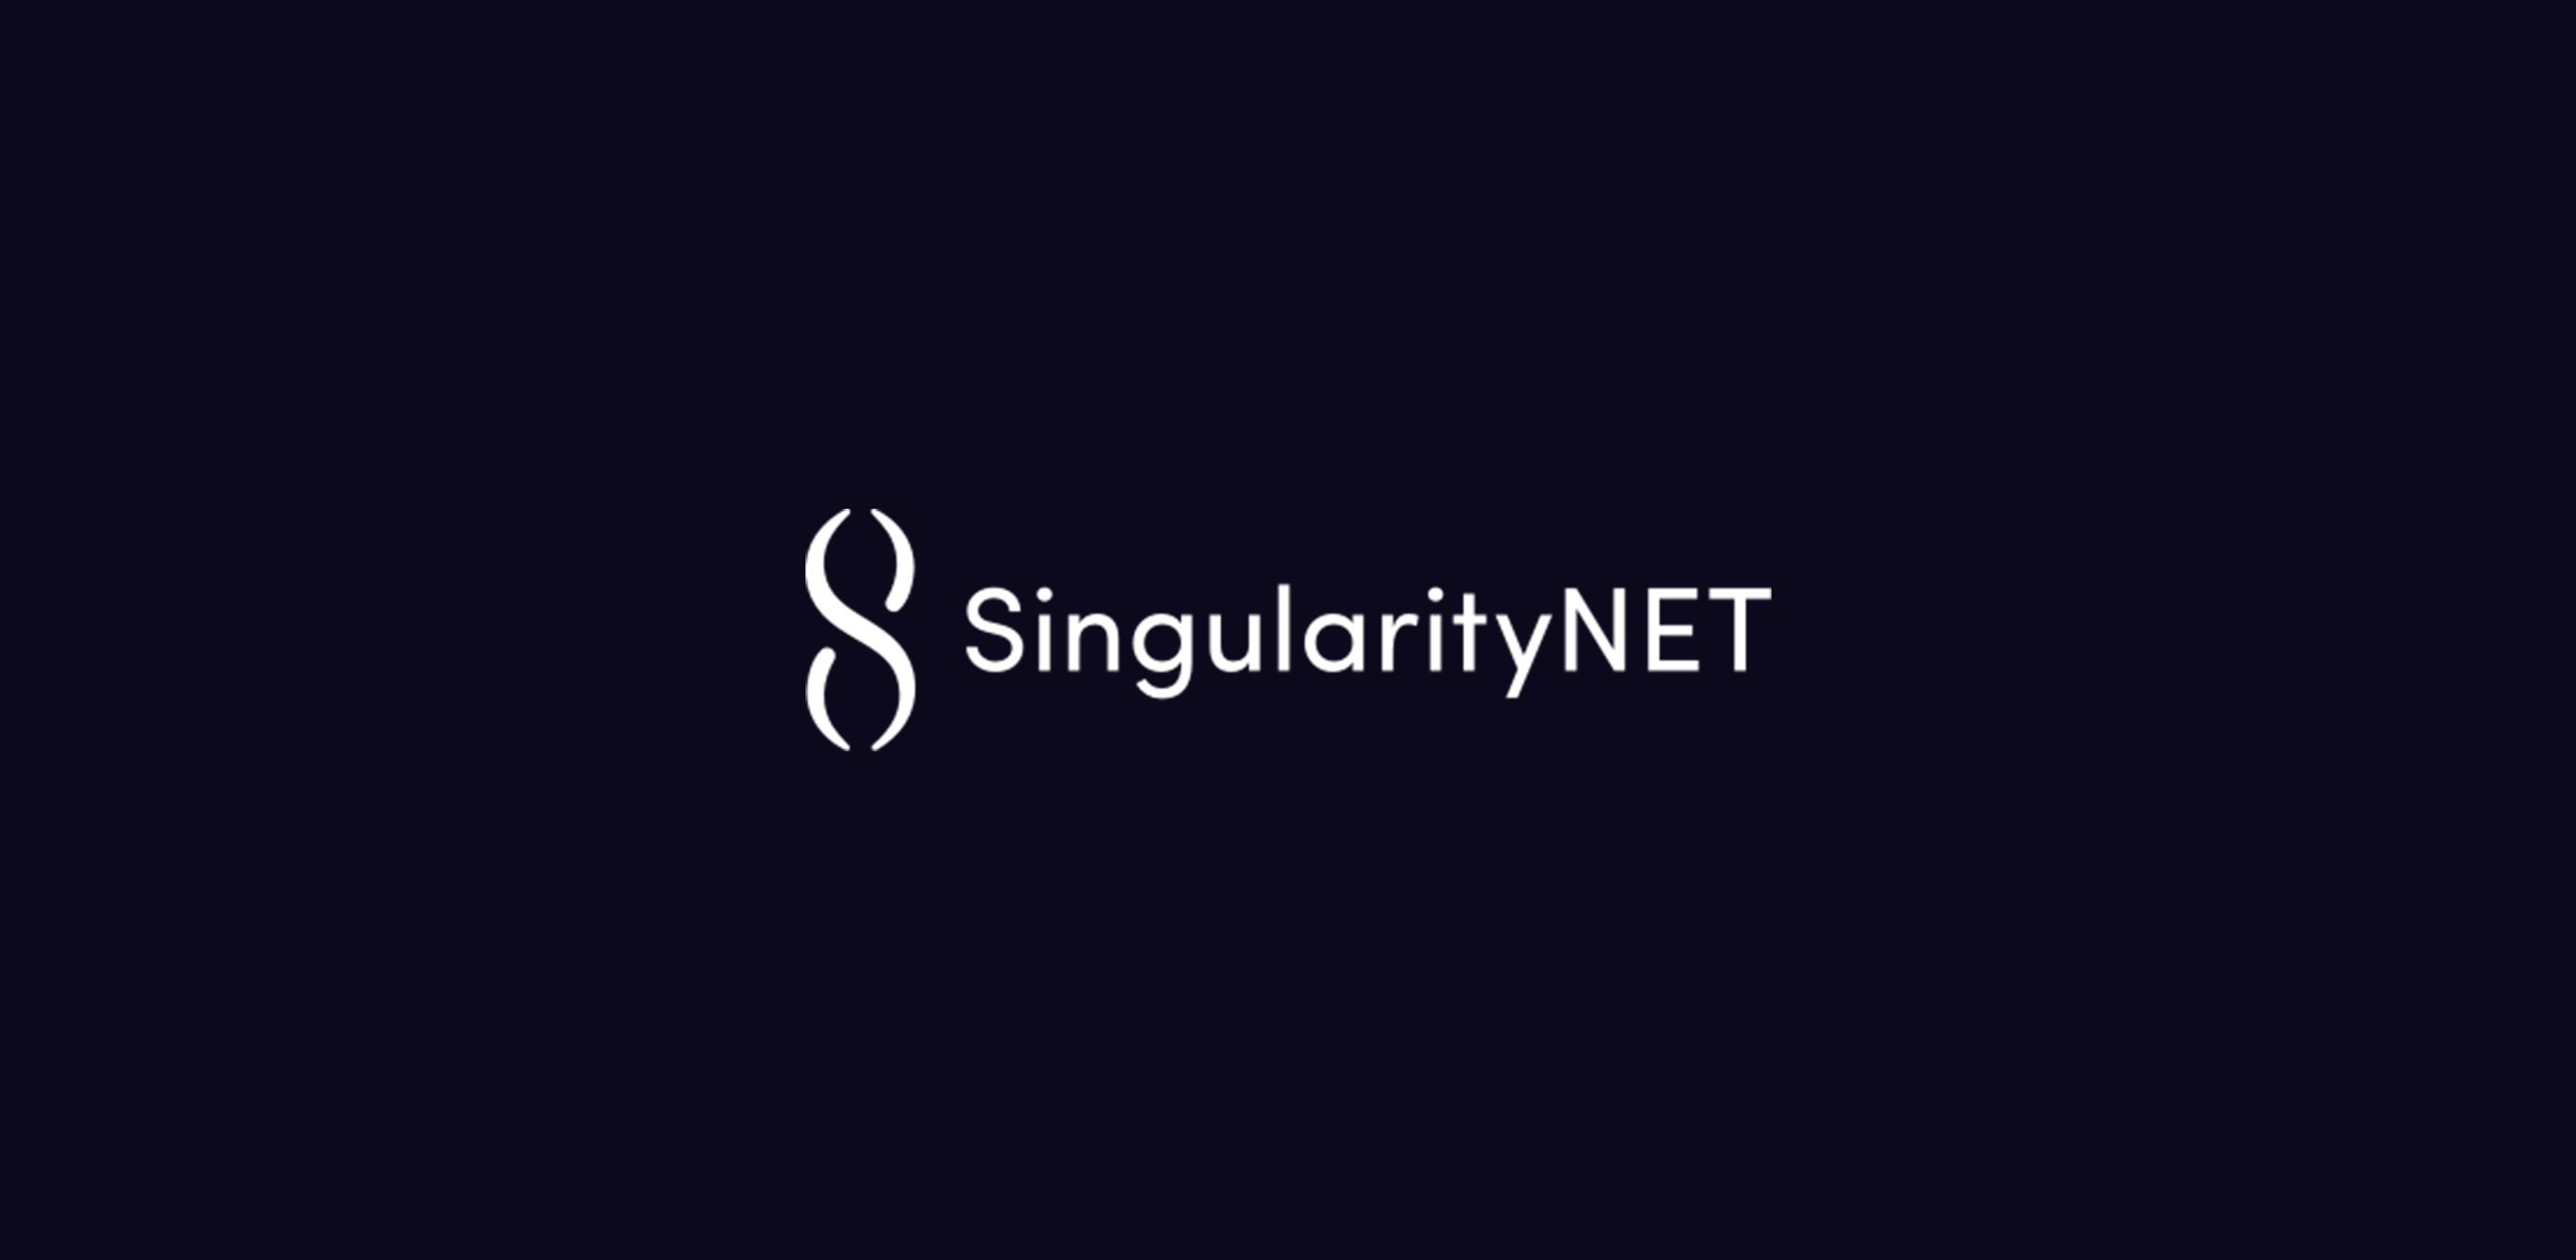 SingularityNETとは？ 究極の AI ネットワーク